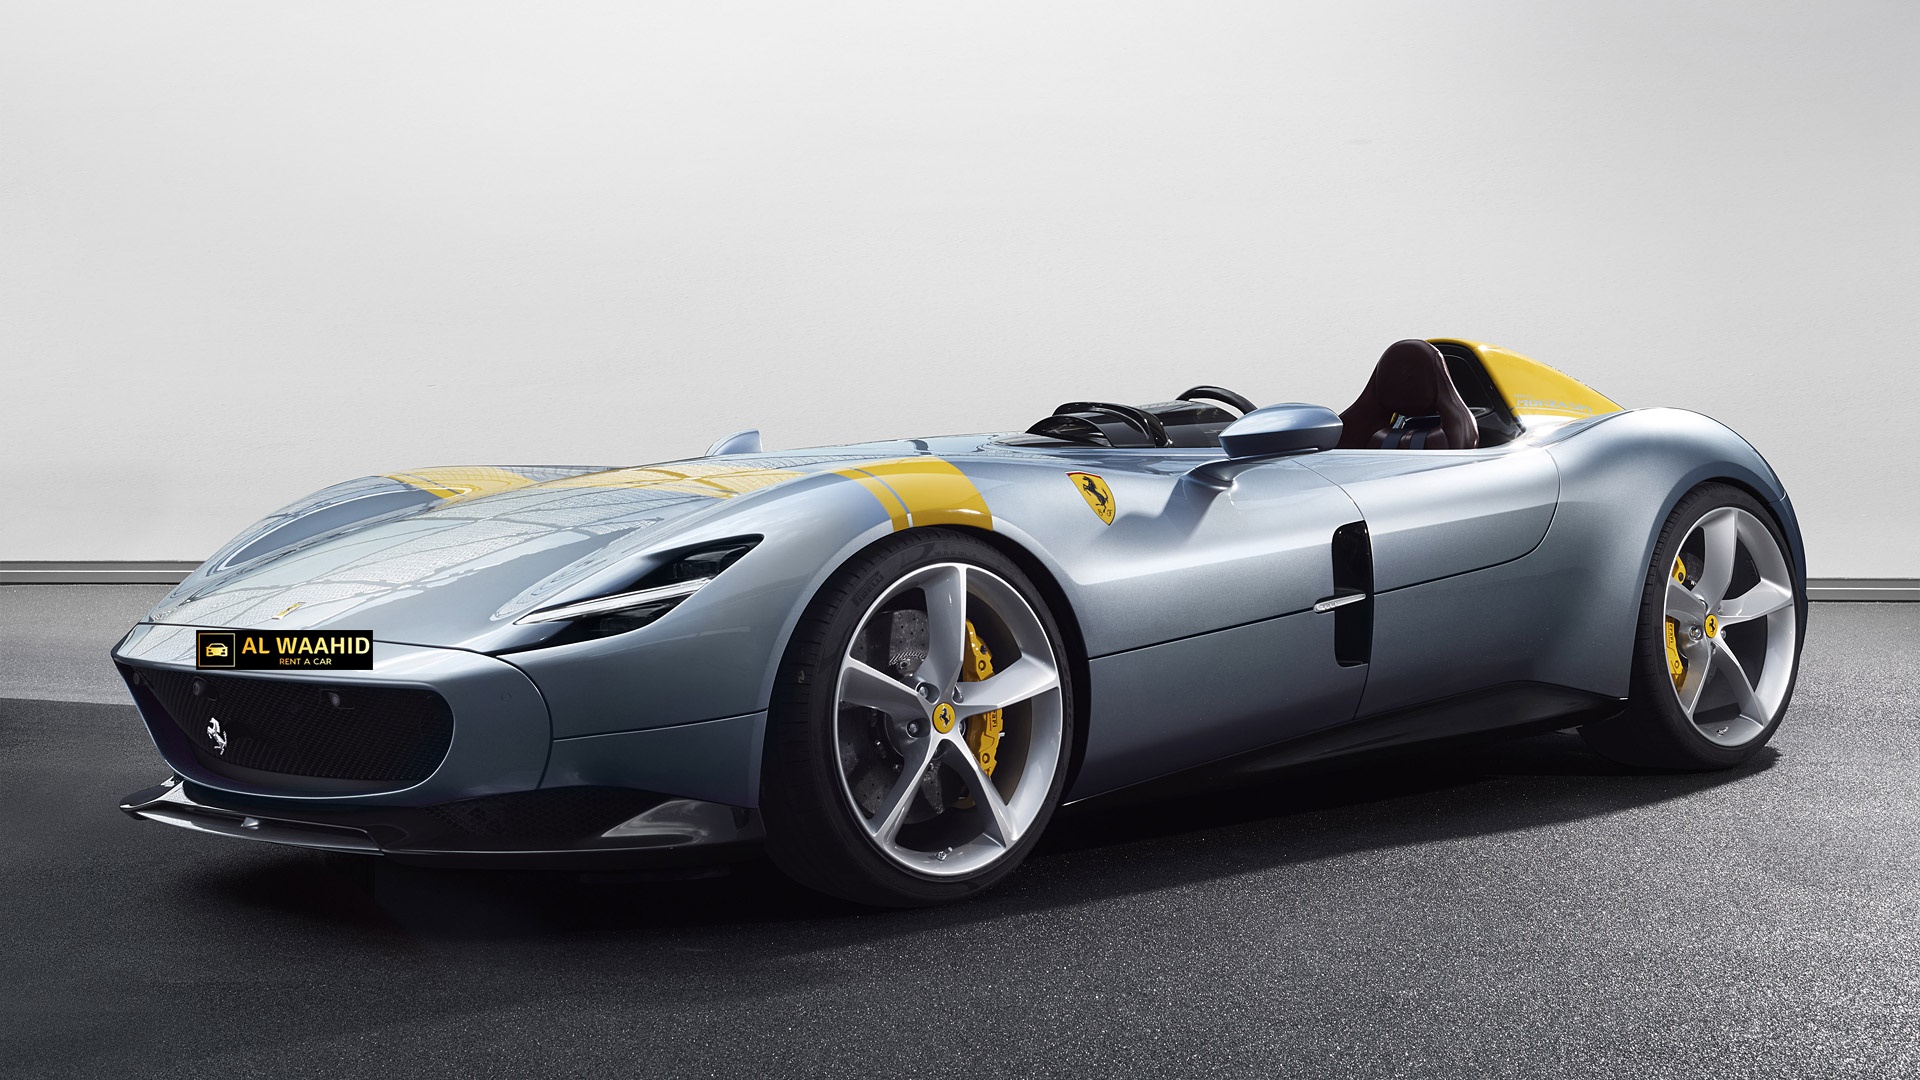 2019 Ferrari Monza SP1 rental dubai luxury cars rental dubai